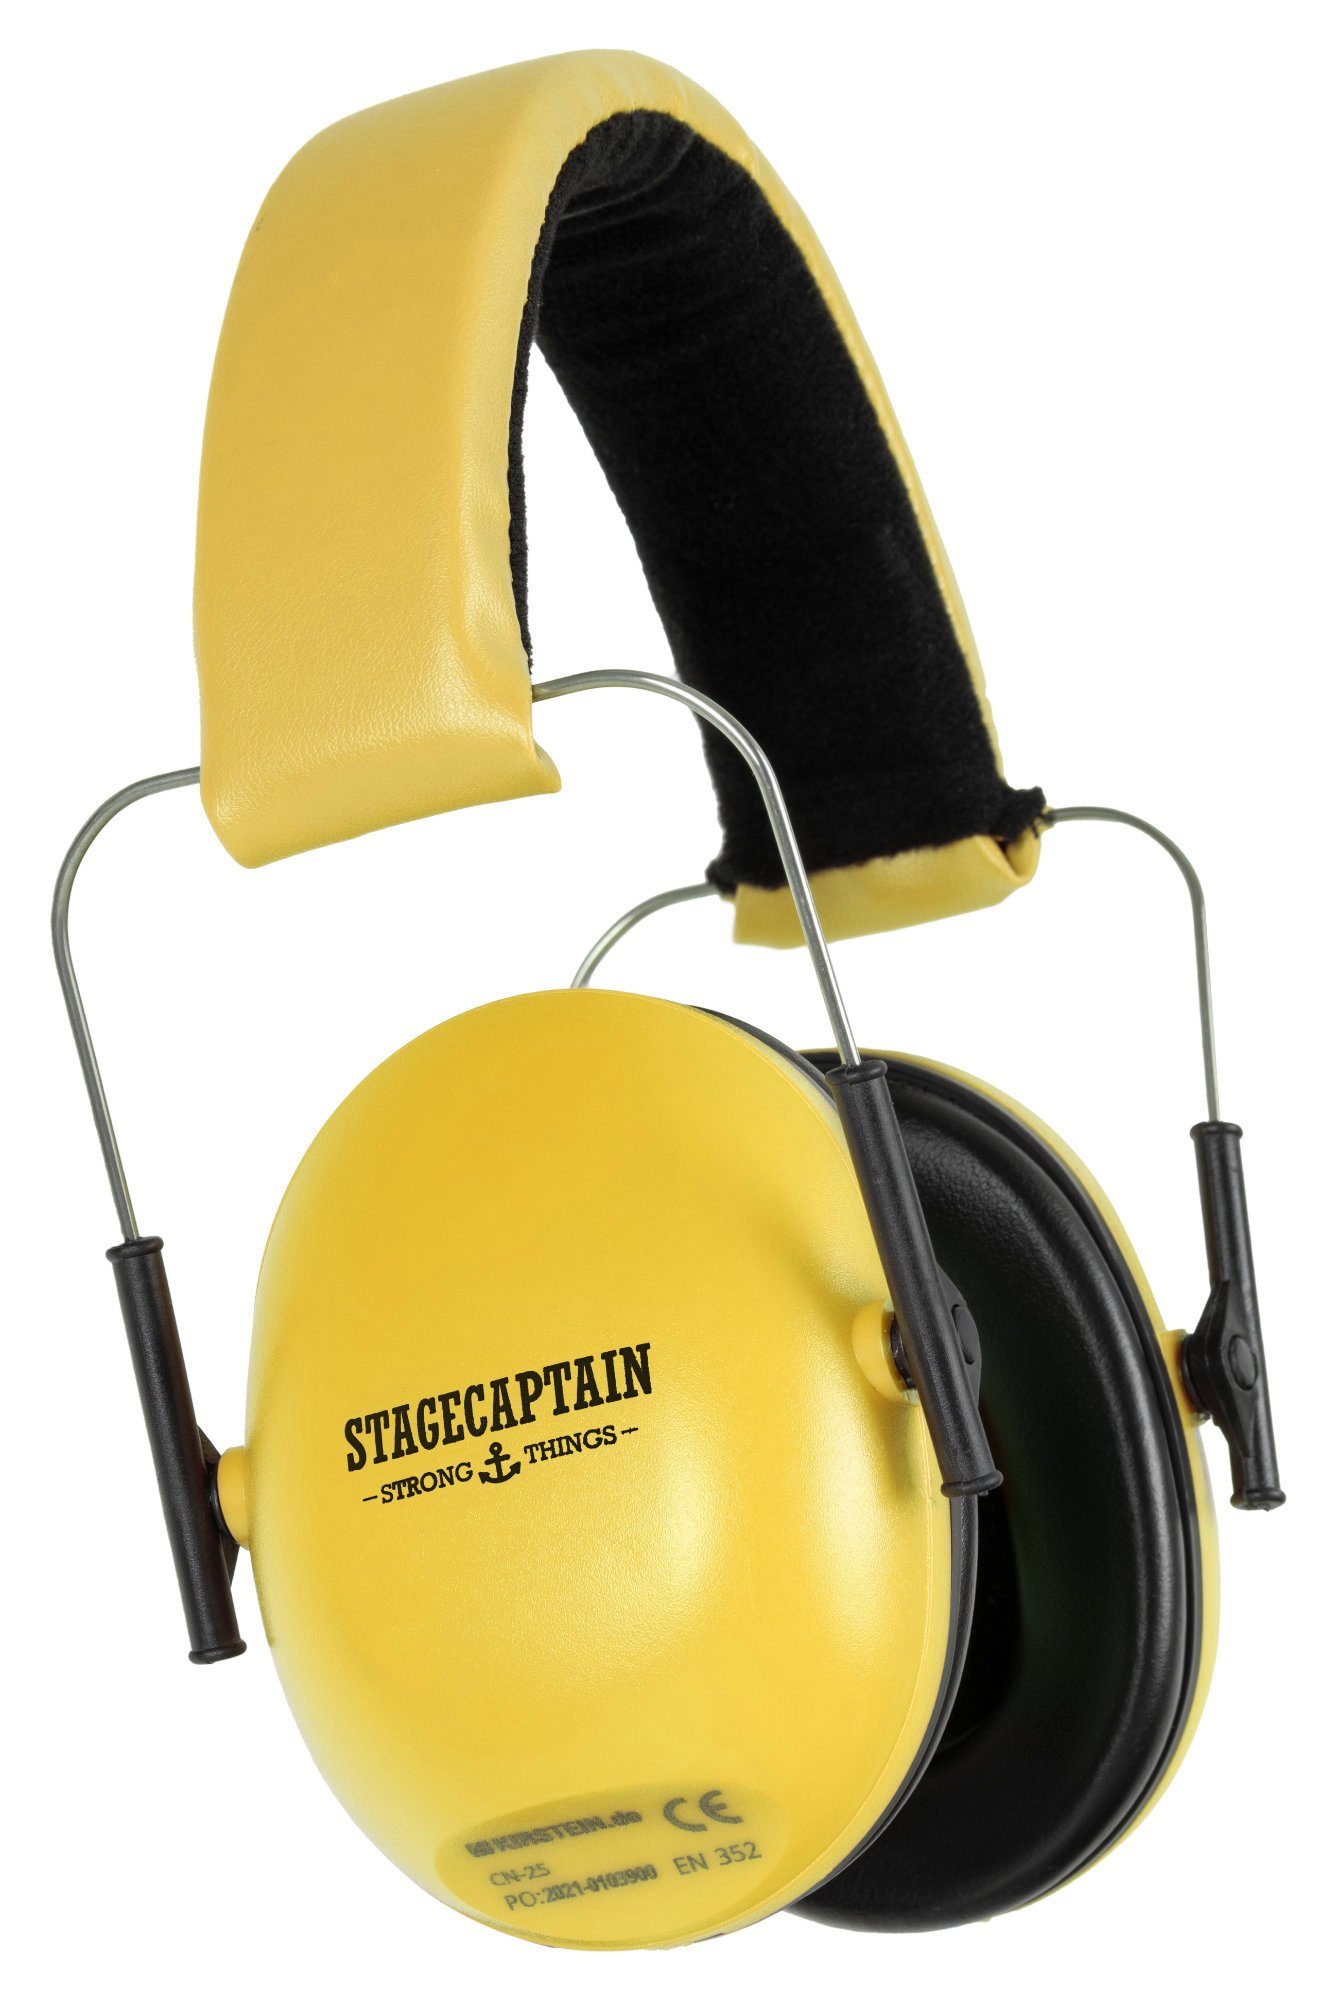 Stagecaptain Bügelgehörschutz Contranoise CN-25 Gehörschutz mit 25 dB Dämpfung, Ohrenschützer für Kinder und Erwachsene Gelb | Gehörschutz